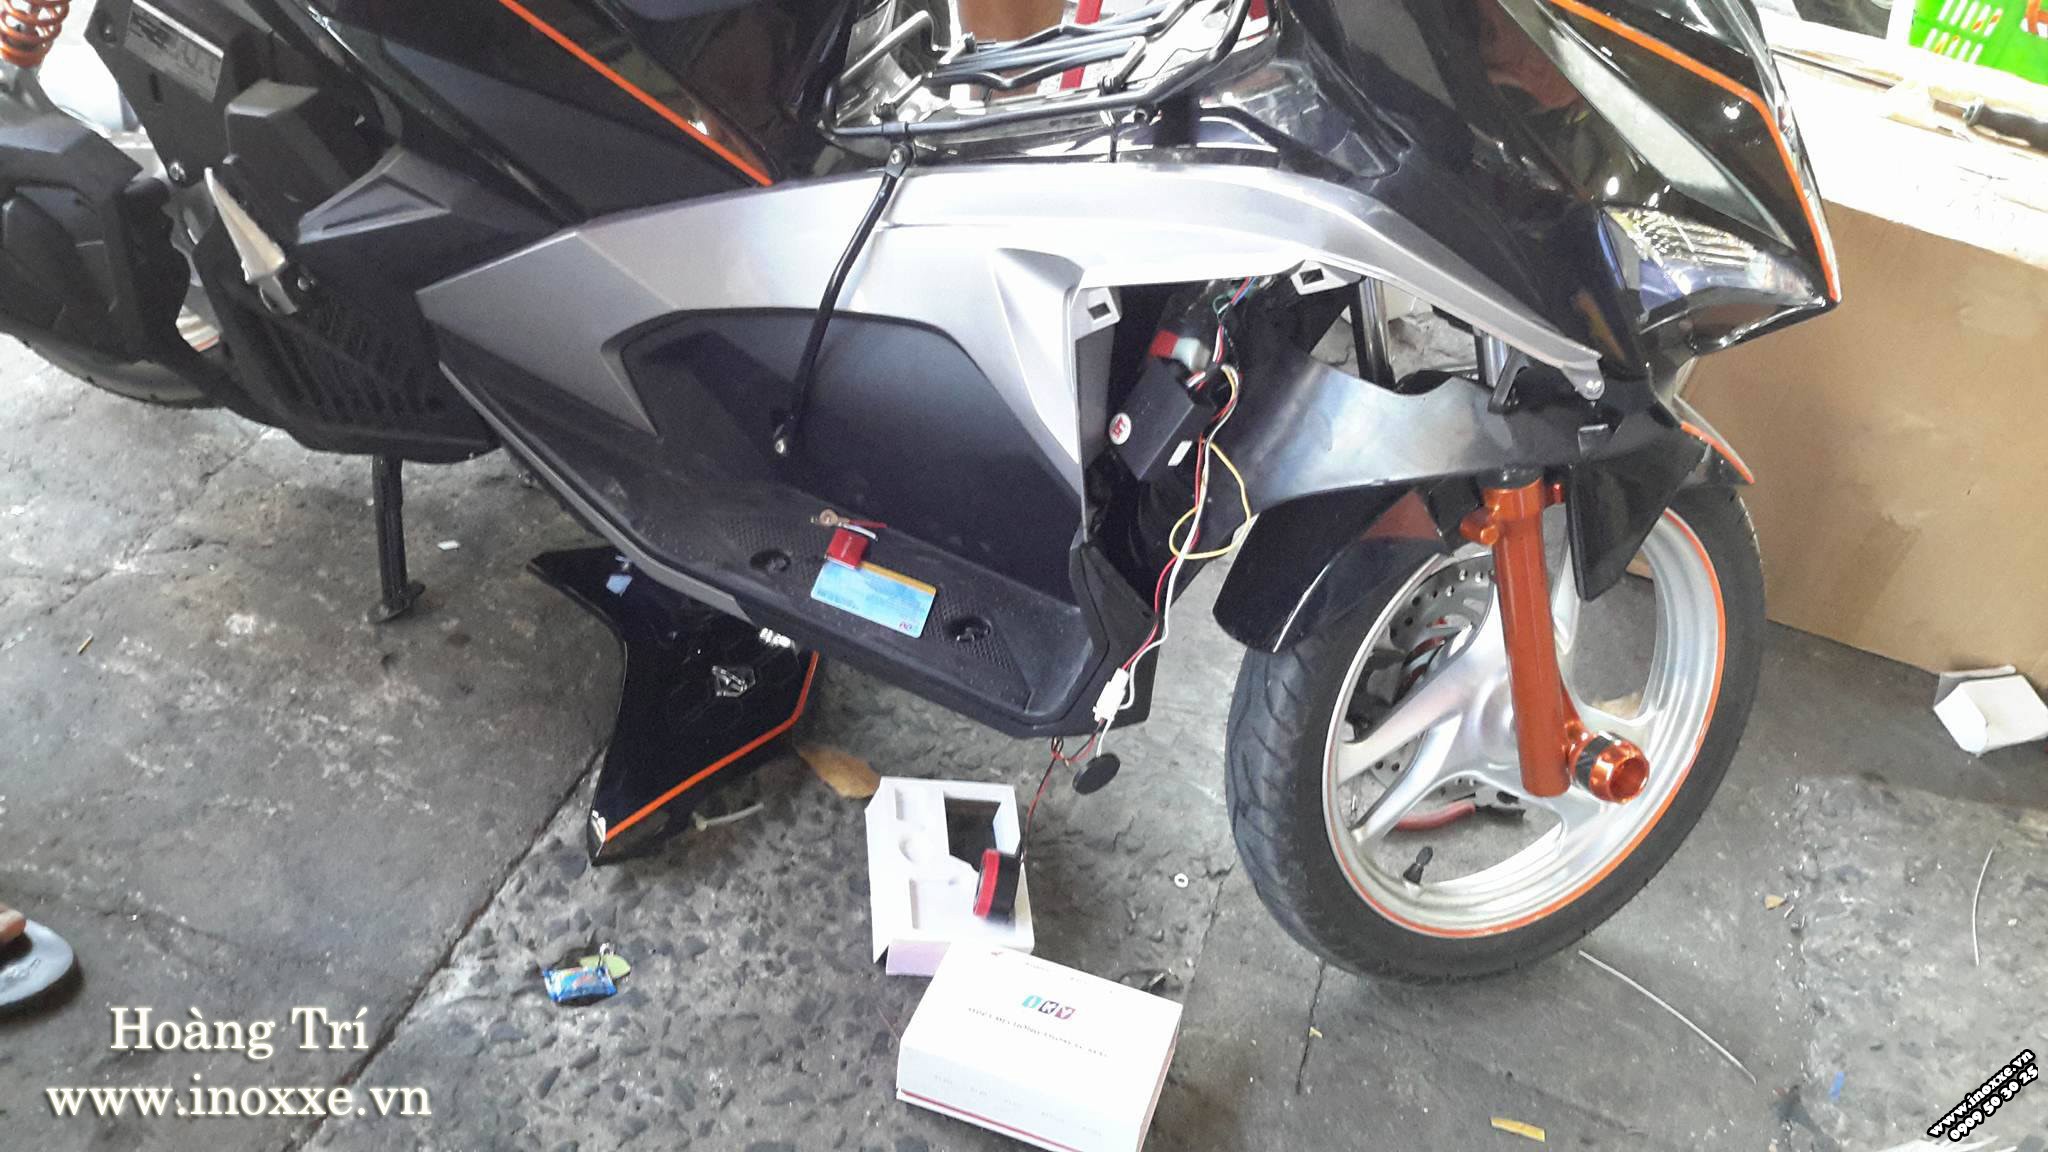 Khóa chống trộm Iky Bike 1.1 tích hợp Remote lắp xe Air Blade 2016